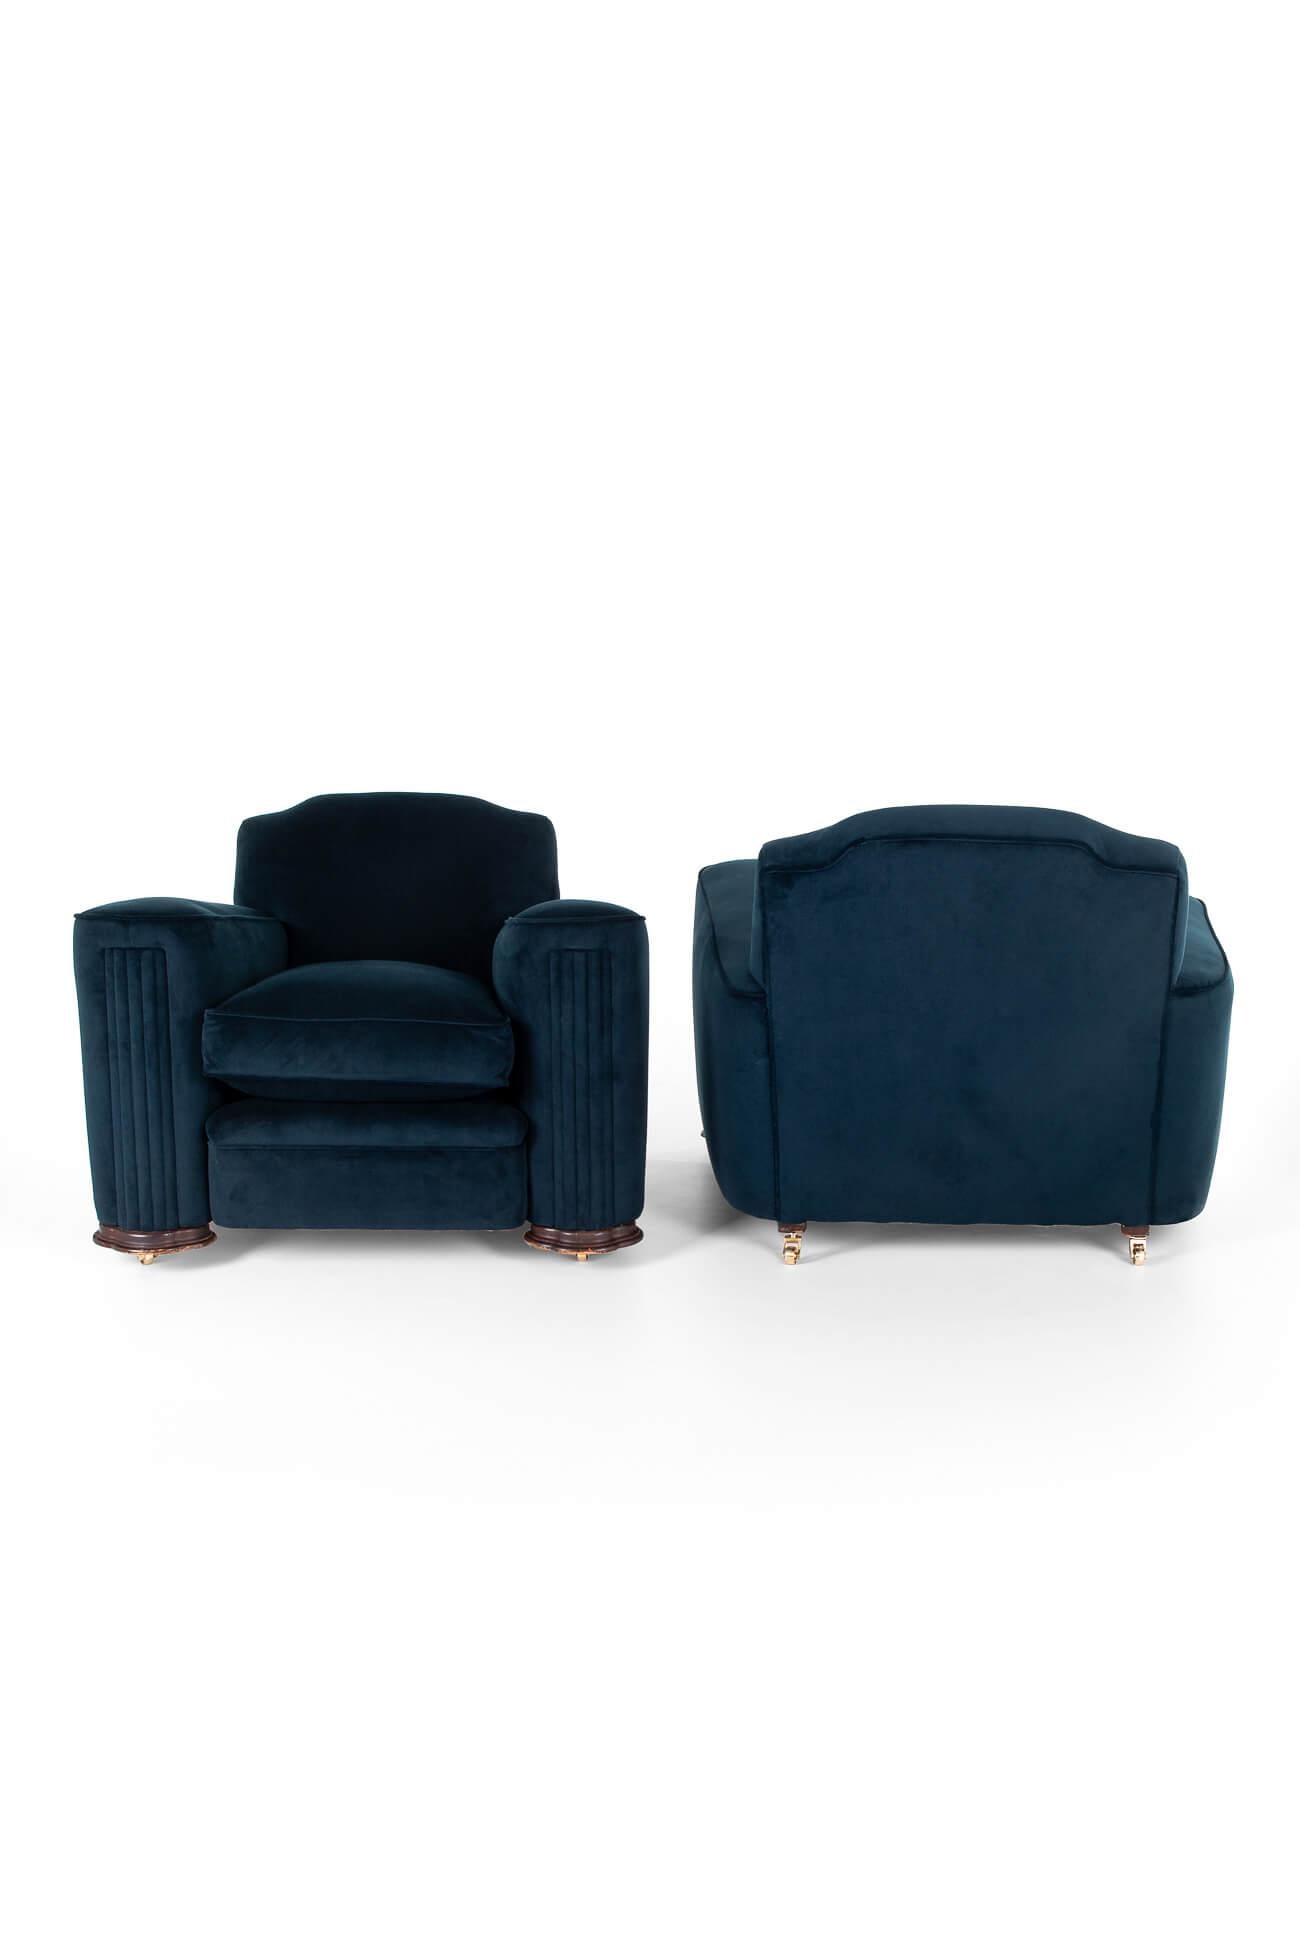 Paire de chaises de salon Art Déco assorties, recouvertes d'une riche tapisserie bleu marine.

Les fauteuils ont des dossiers hauts et de larges accoudoirs en forme de colonne avec des façades plissées qui entourent les sièges généreux. Les deux